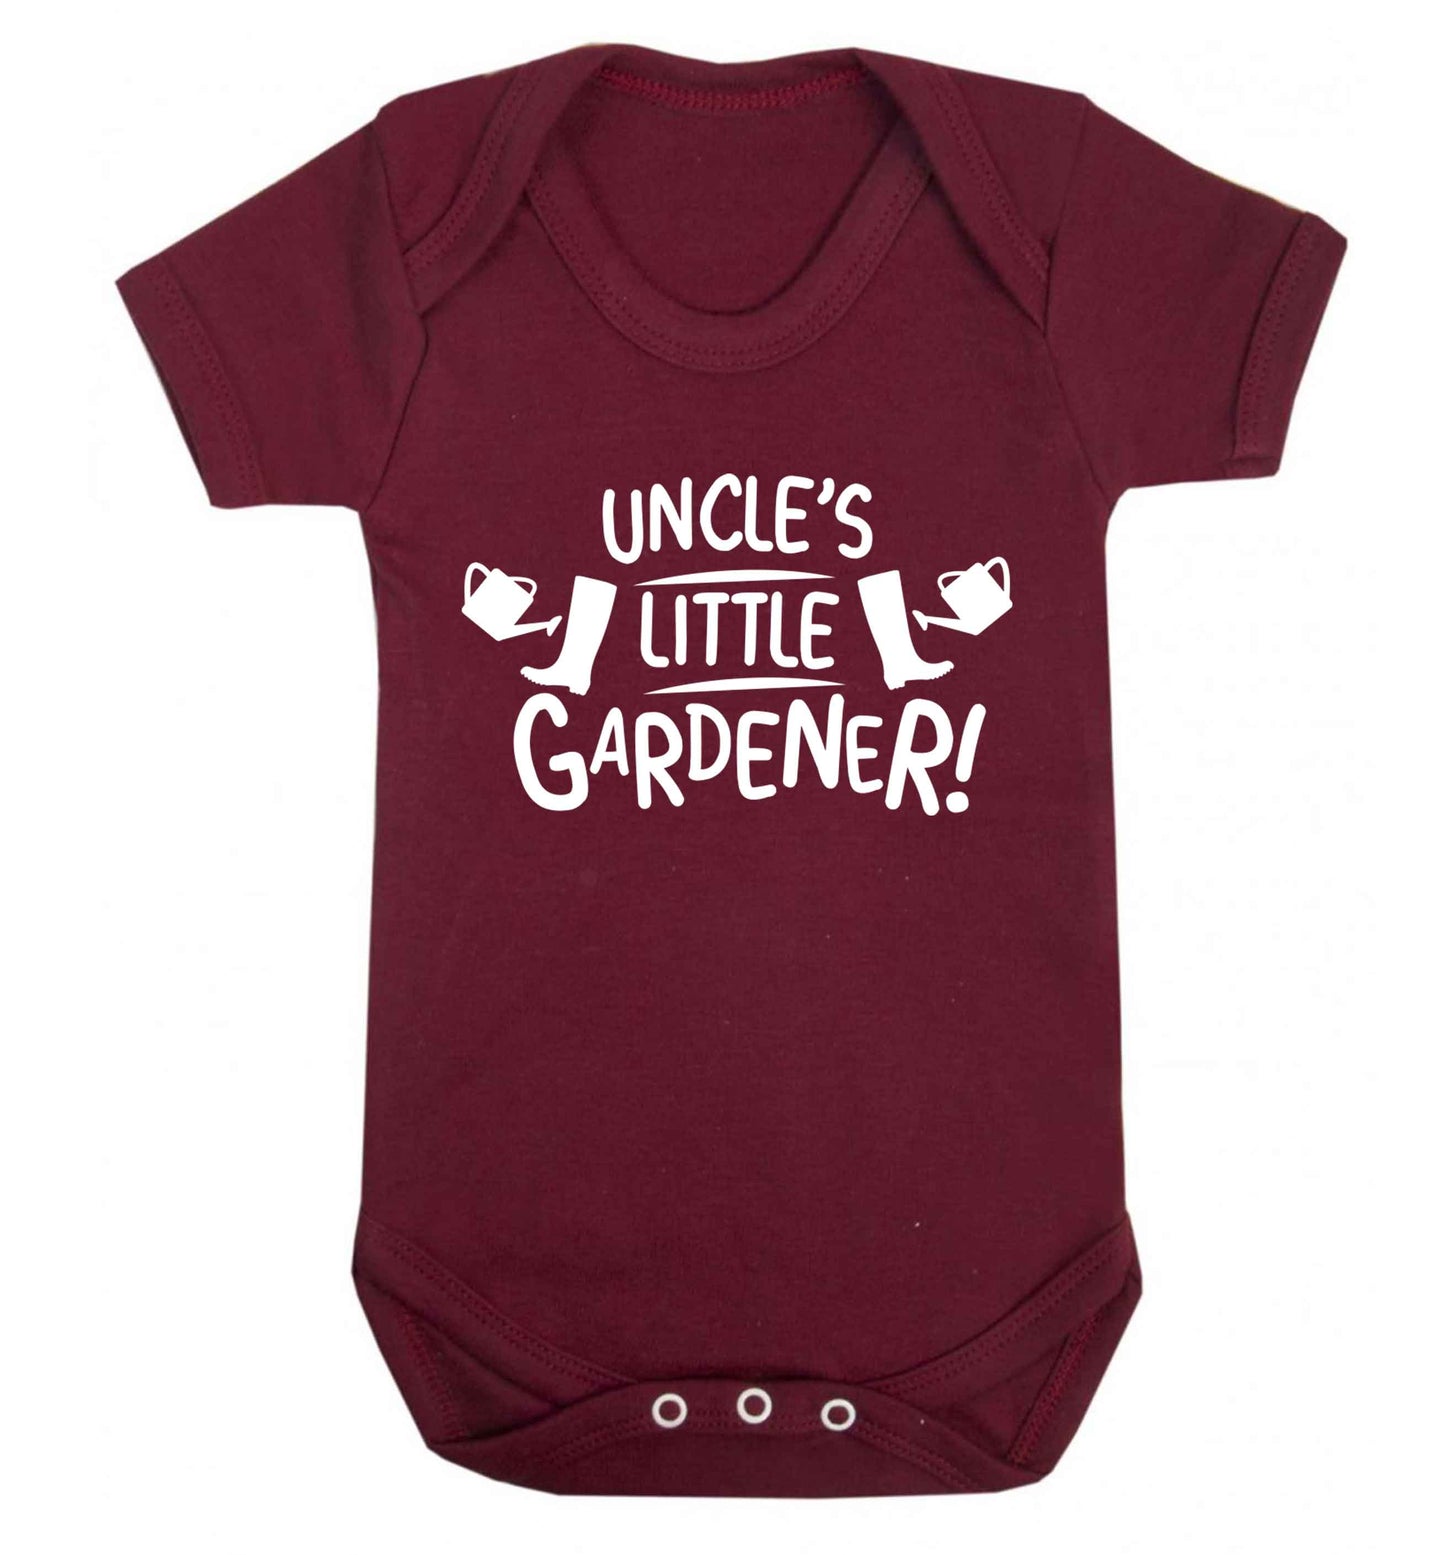 Uncle's little gardener Baby Vest maroon 18-24 months